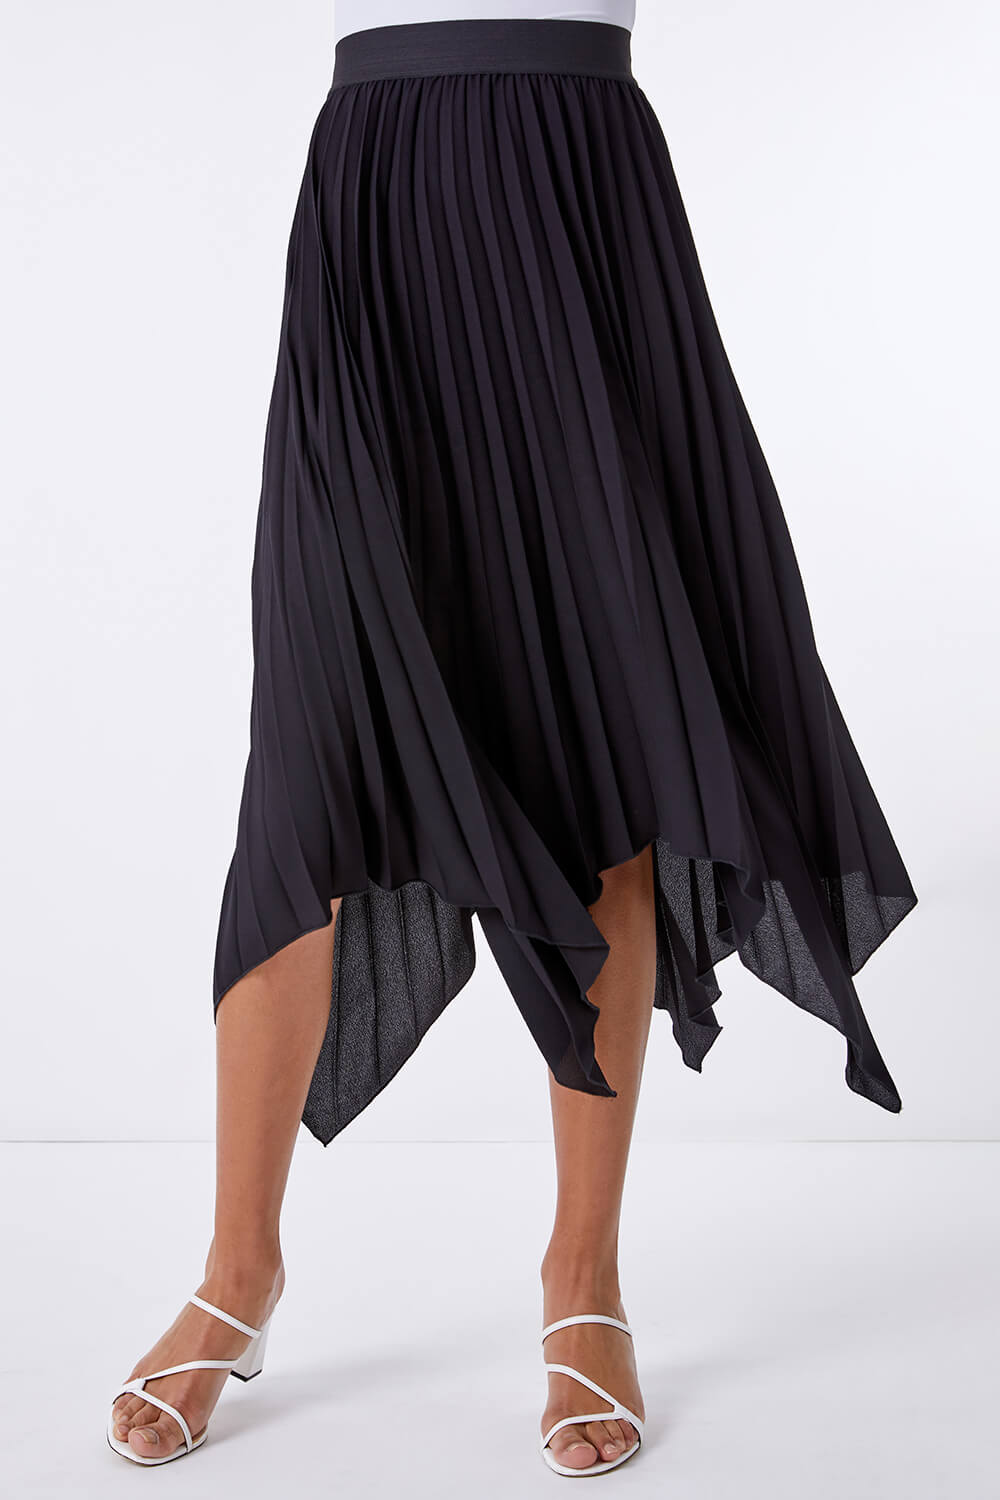 Black Pleated Hanky Hem Midi Skirt, Image 2 of 4